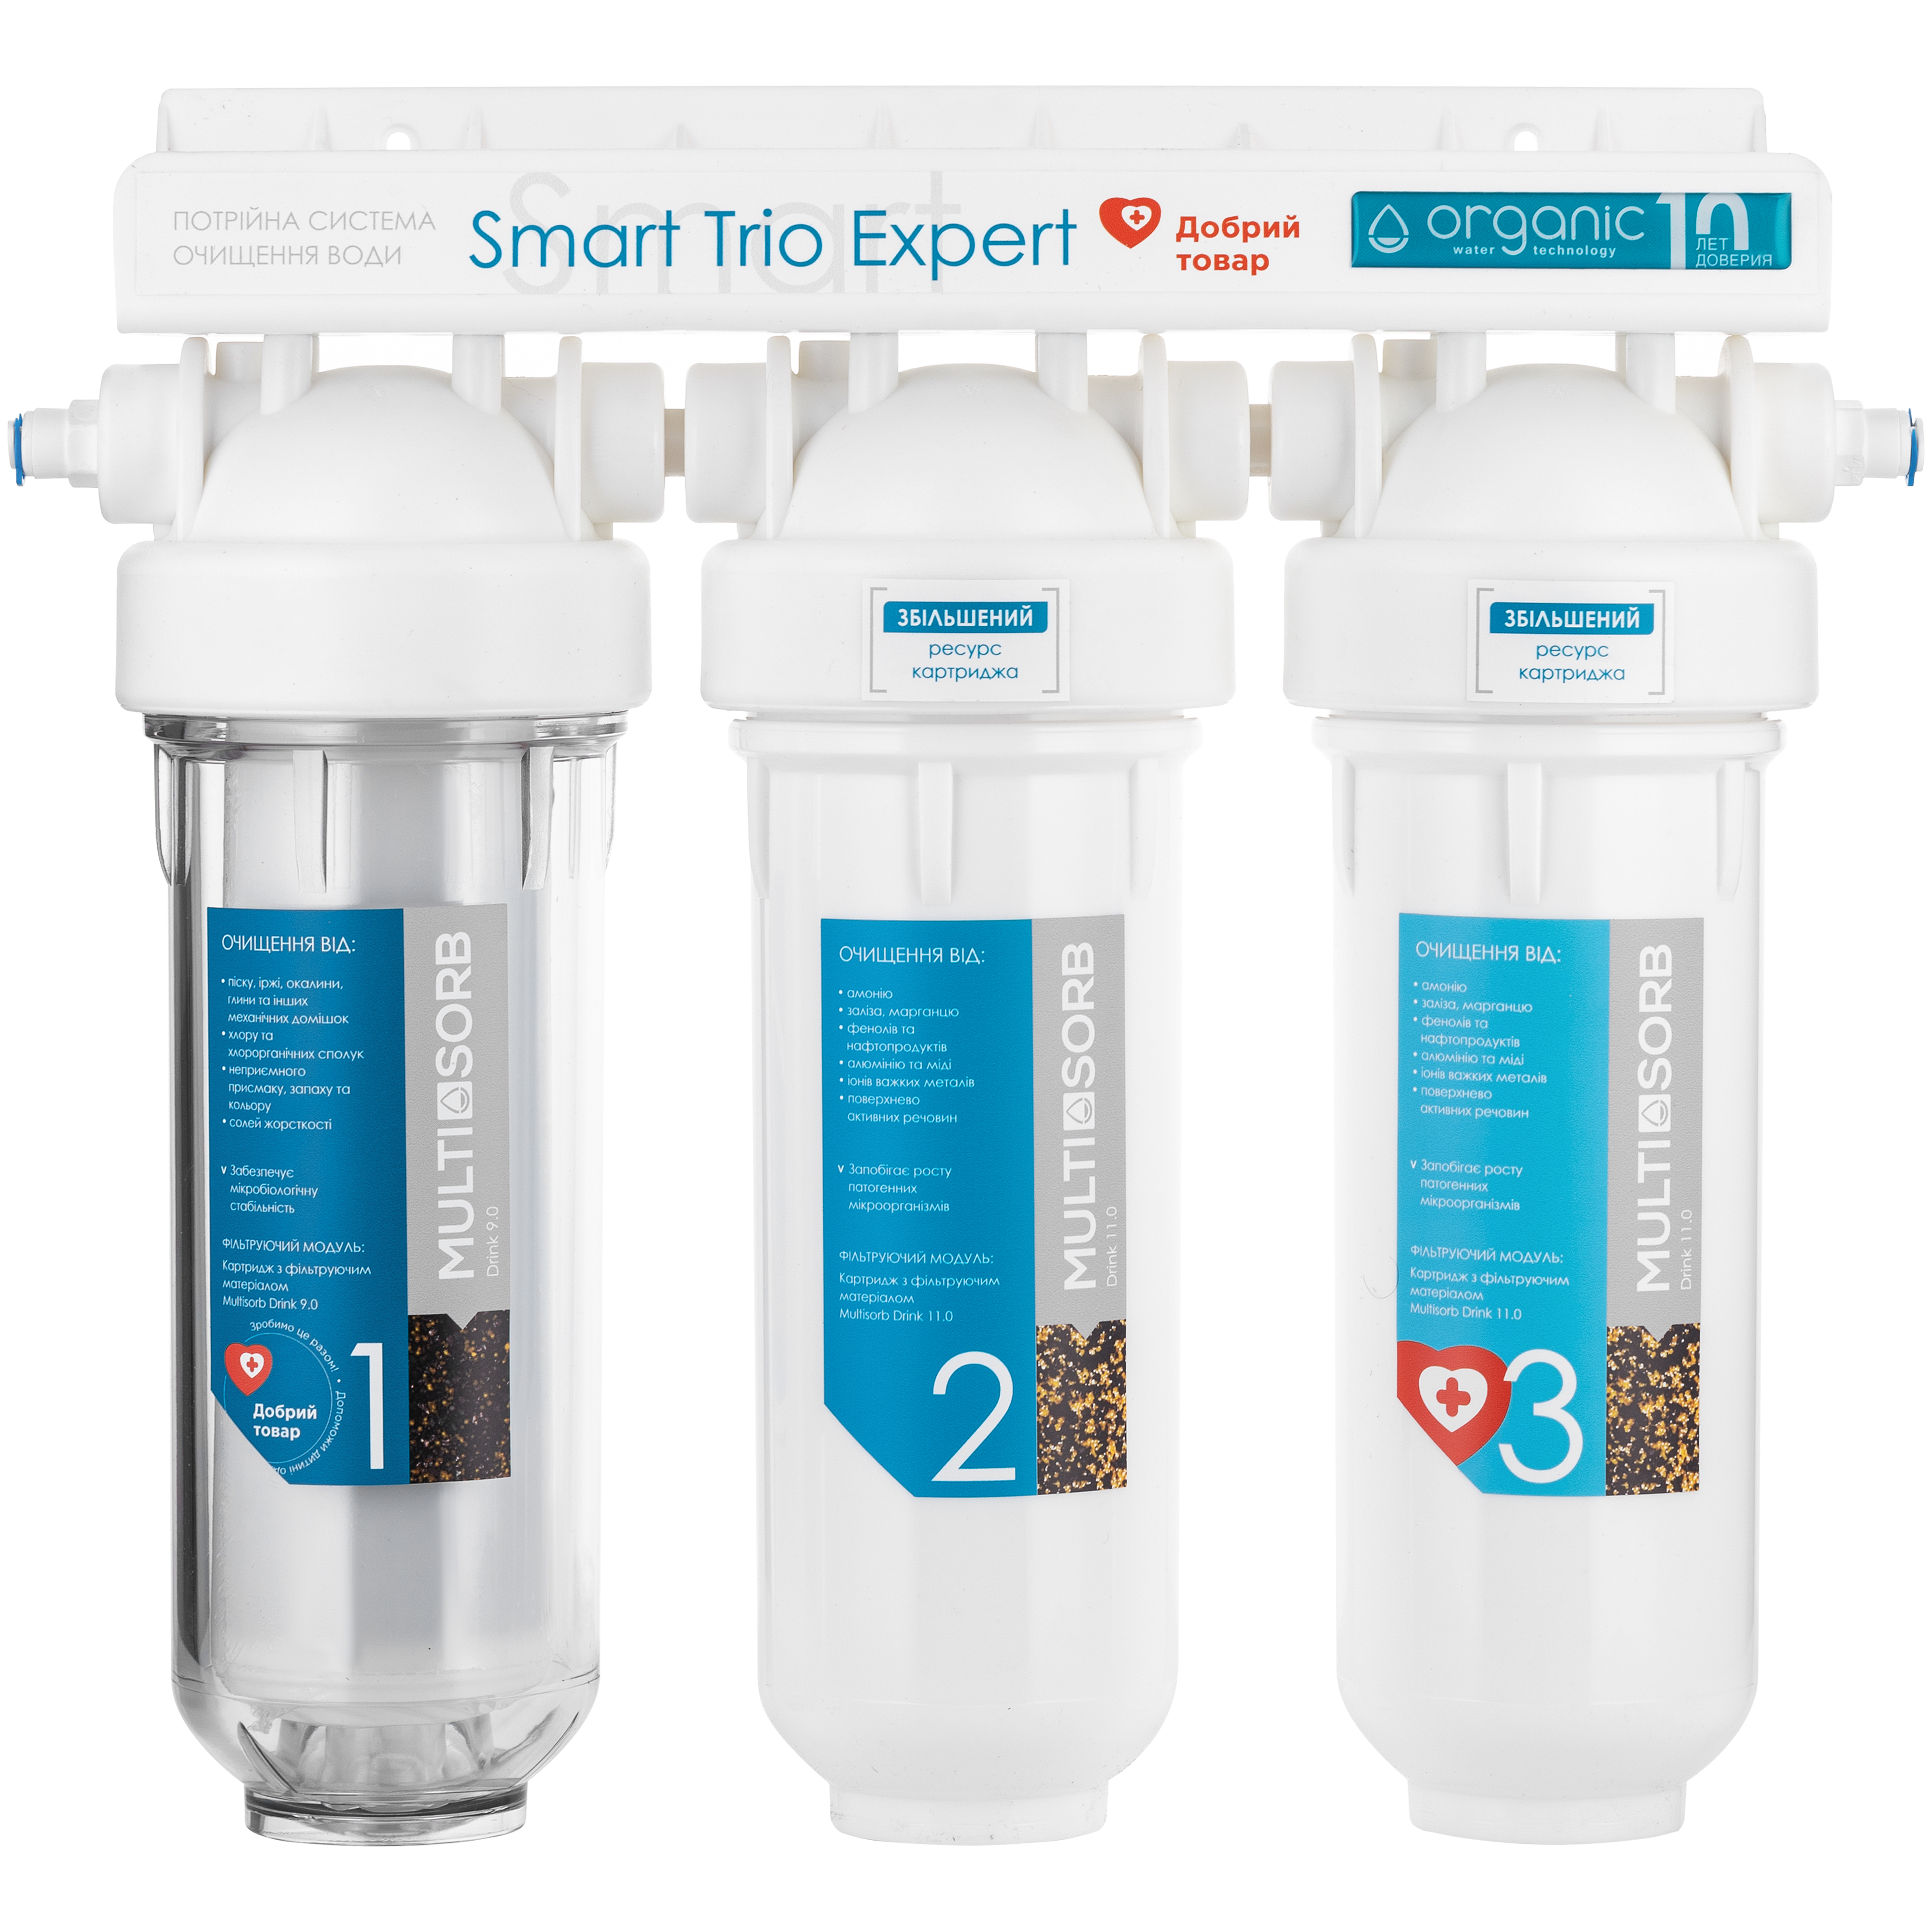 Фильтр для воды Organic Smart TRIO EXPERT в Херсоне